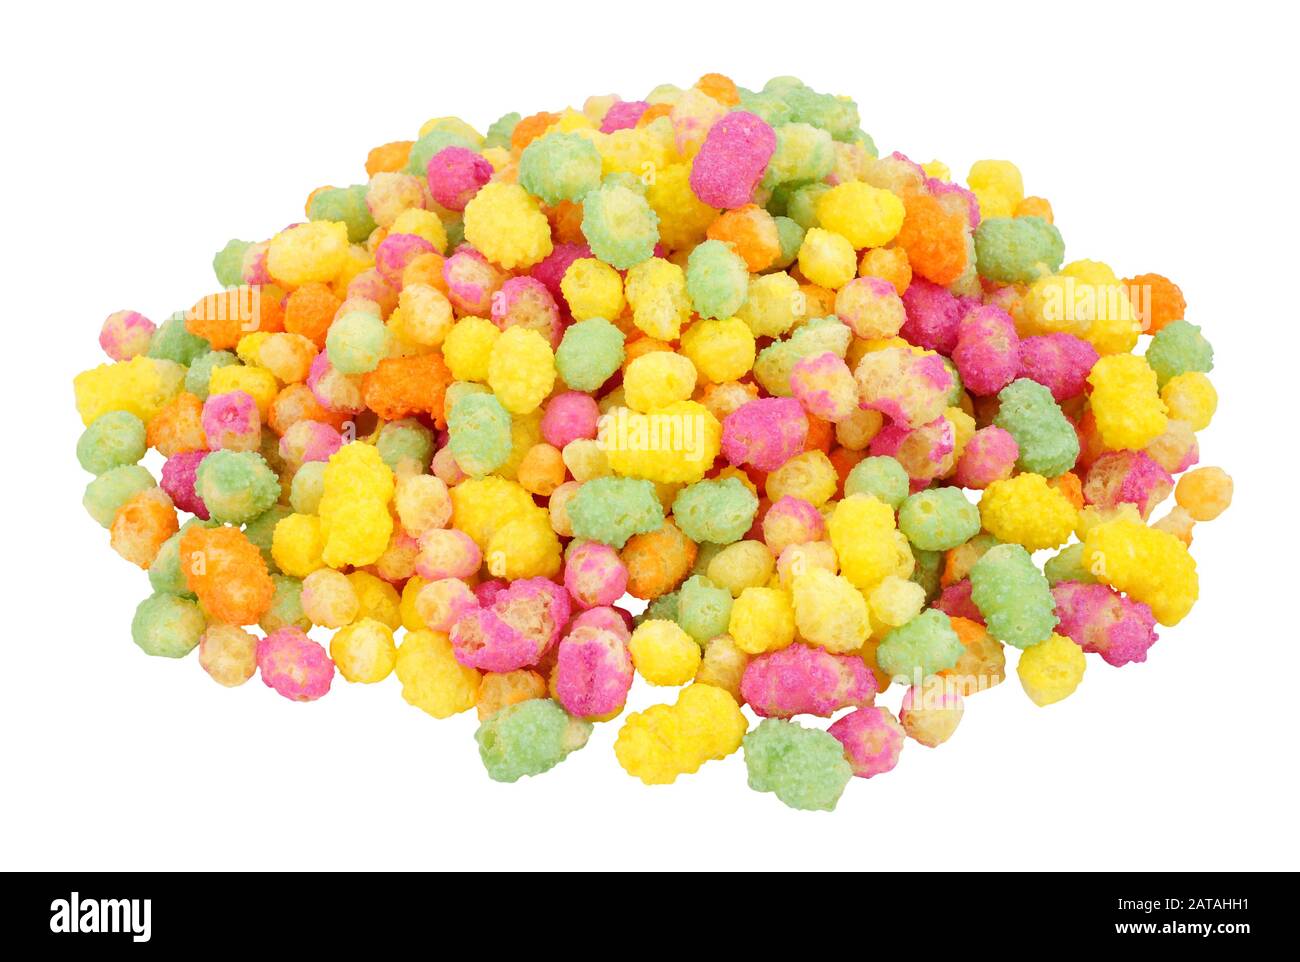 Gruppo di prodotti a base di mais e riso soffiato di colore arcobaleno isolato su sfondo bianco Foto Stock